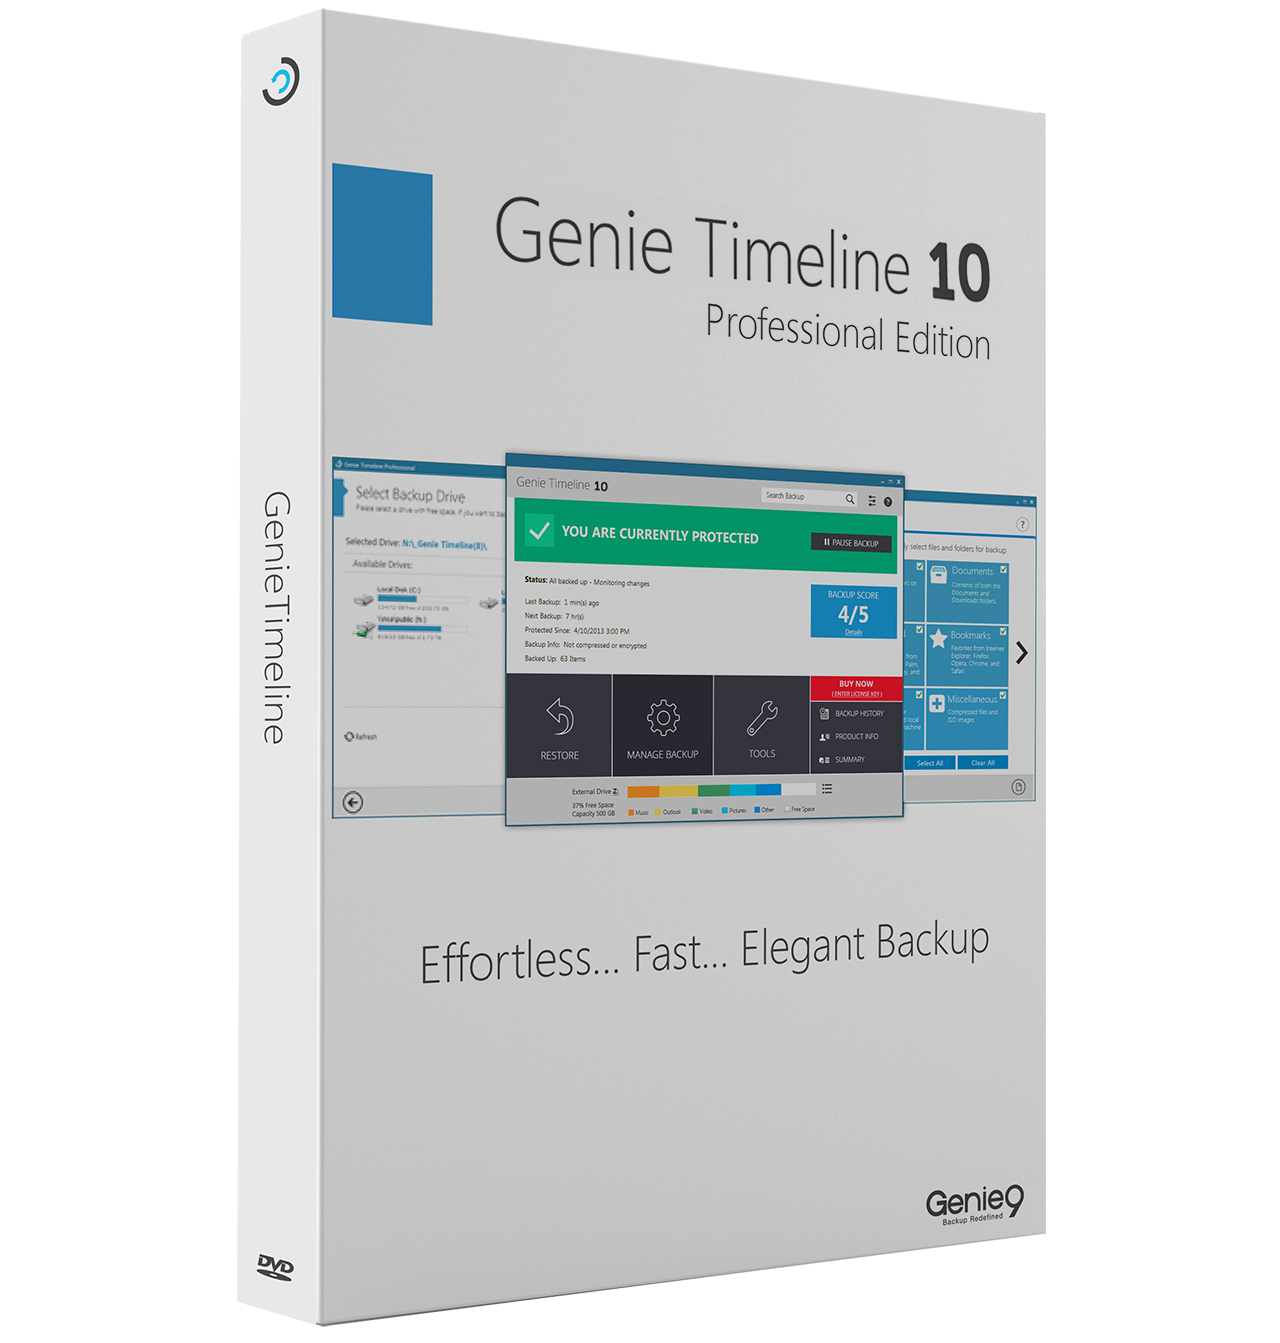 Genie Timeline Pro 10